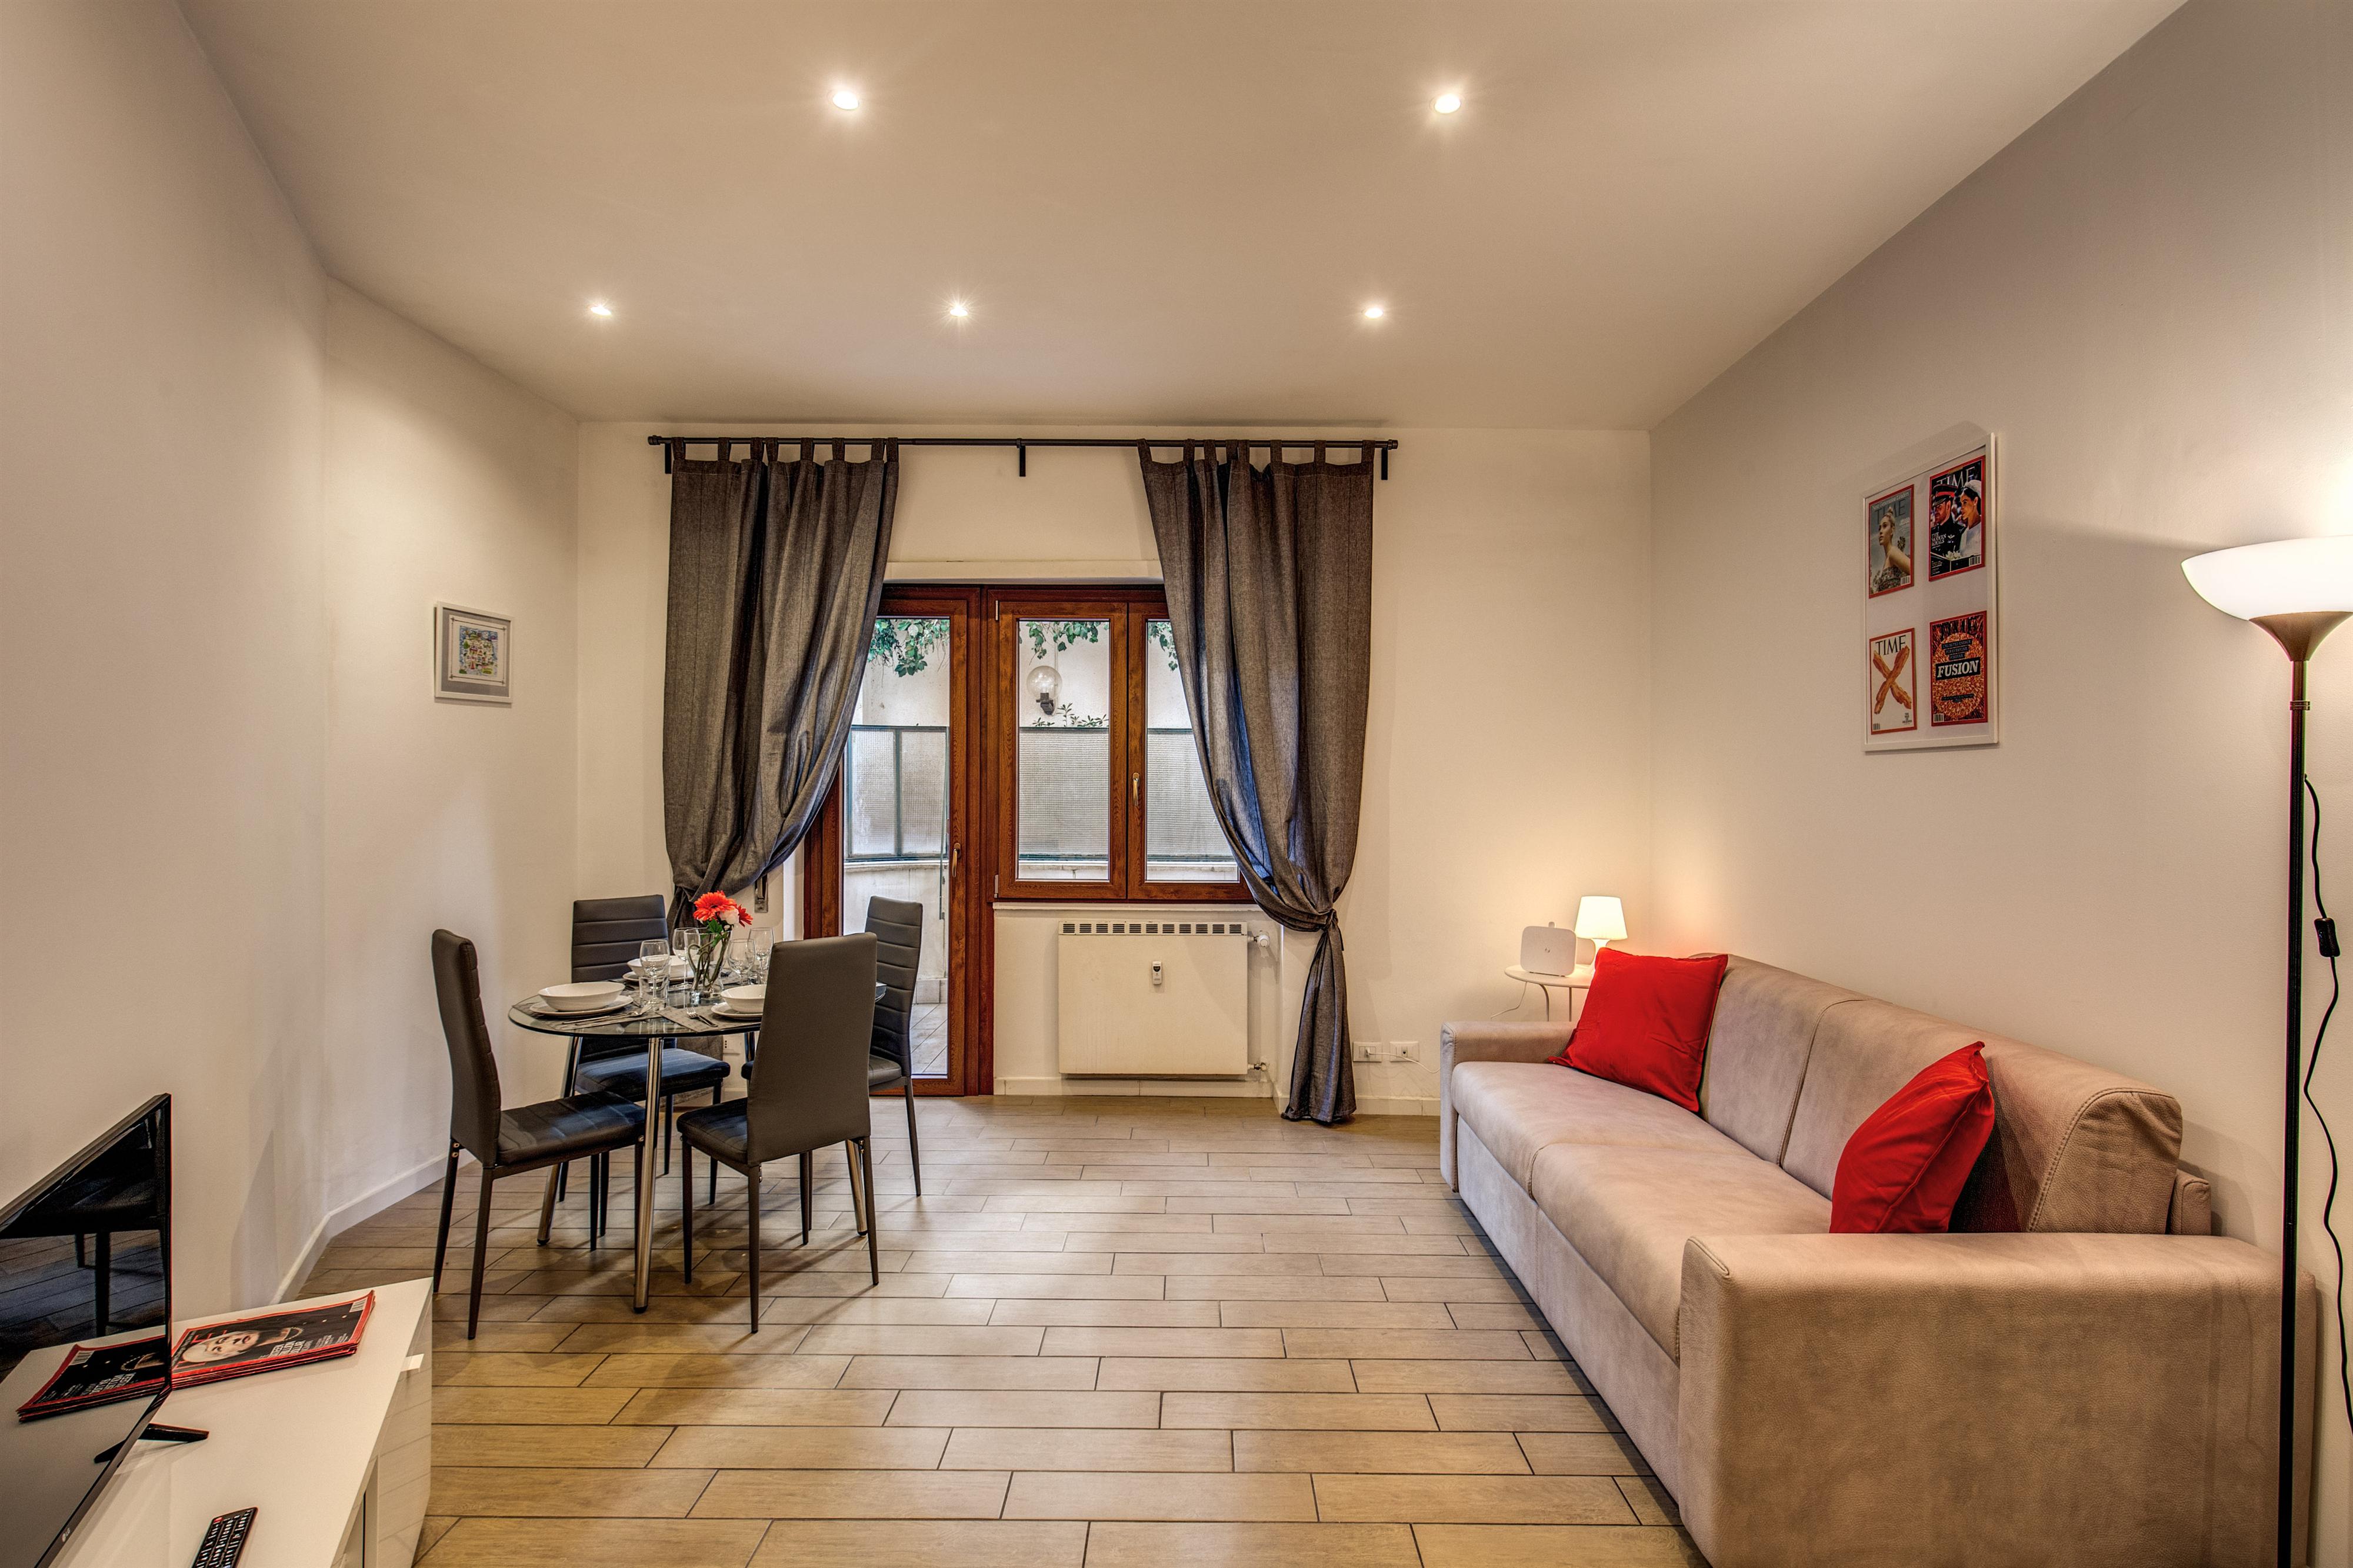 Снять квартиру в риме, италия - советы путешественникам по аренде апартаментов